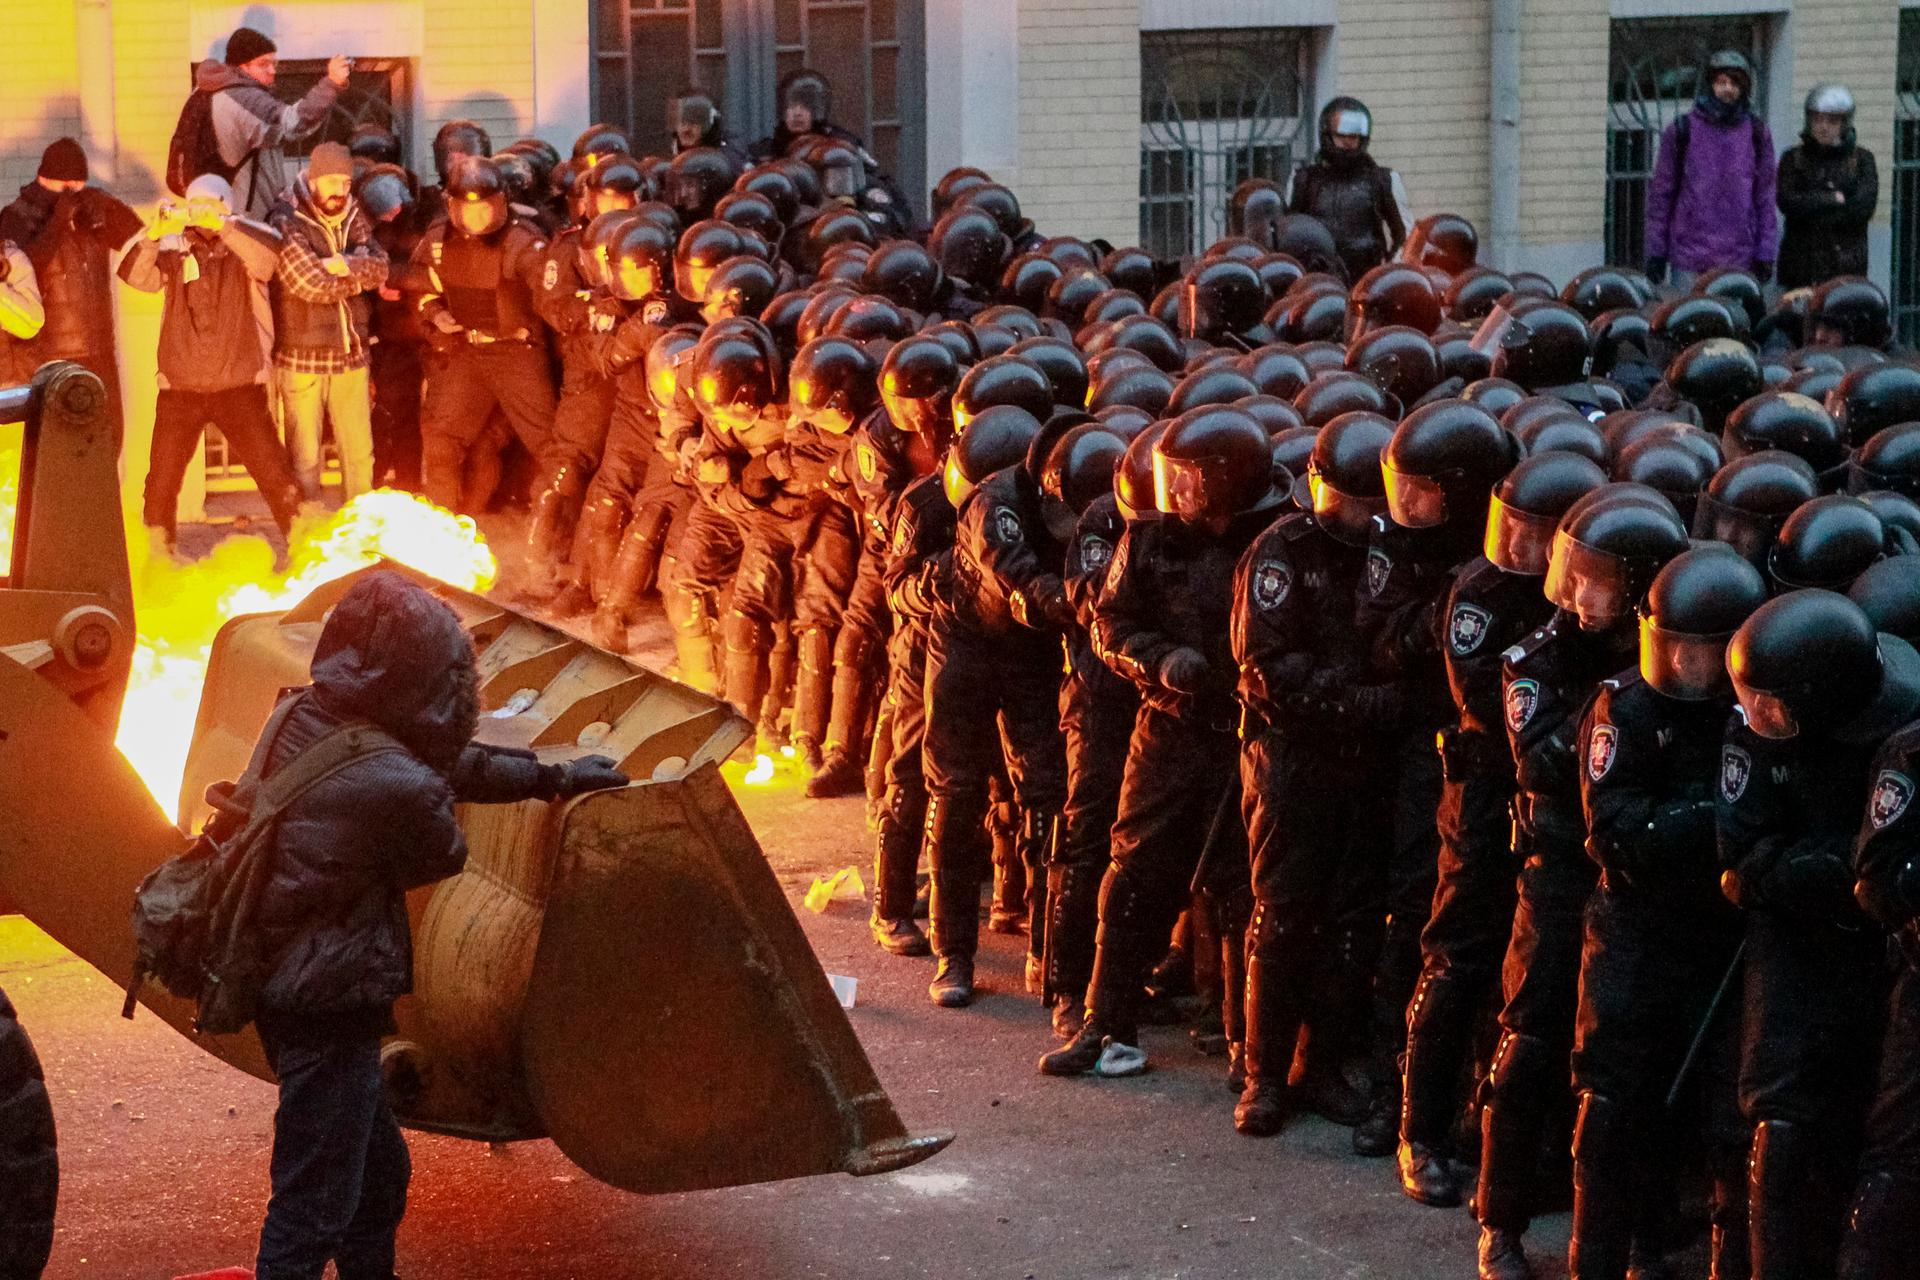 Protesters in Kiev, Ukraine